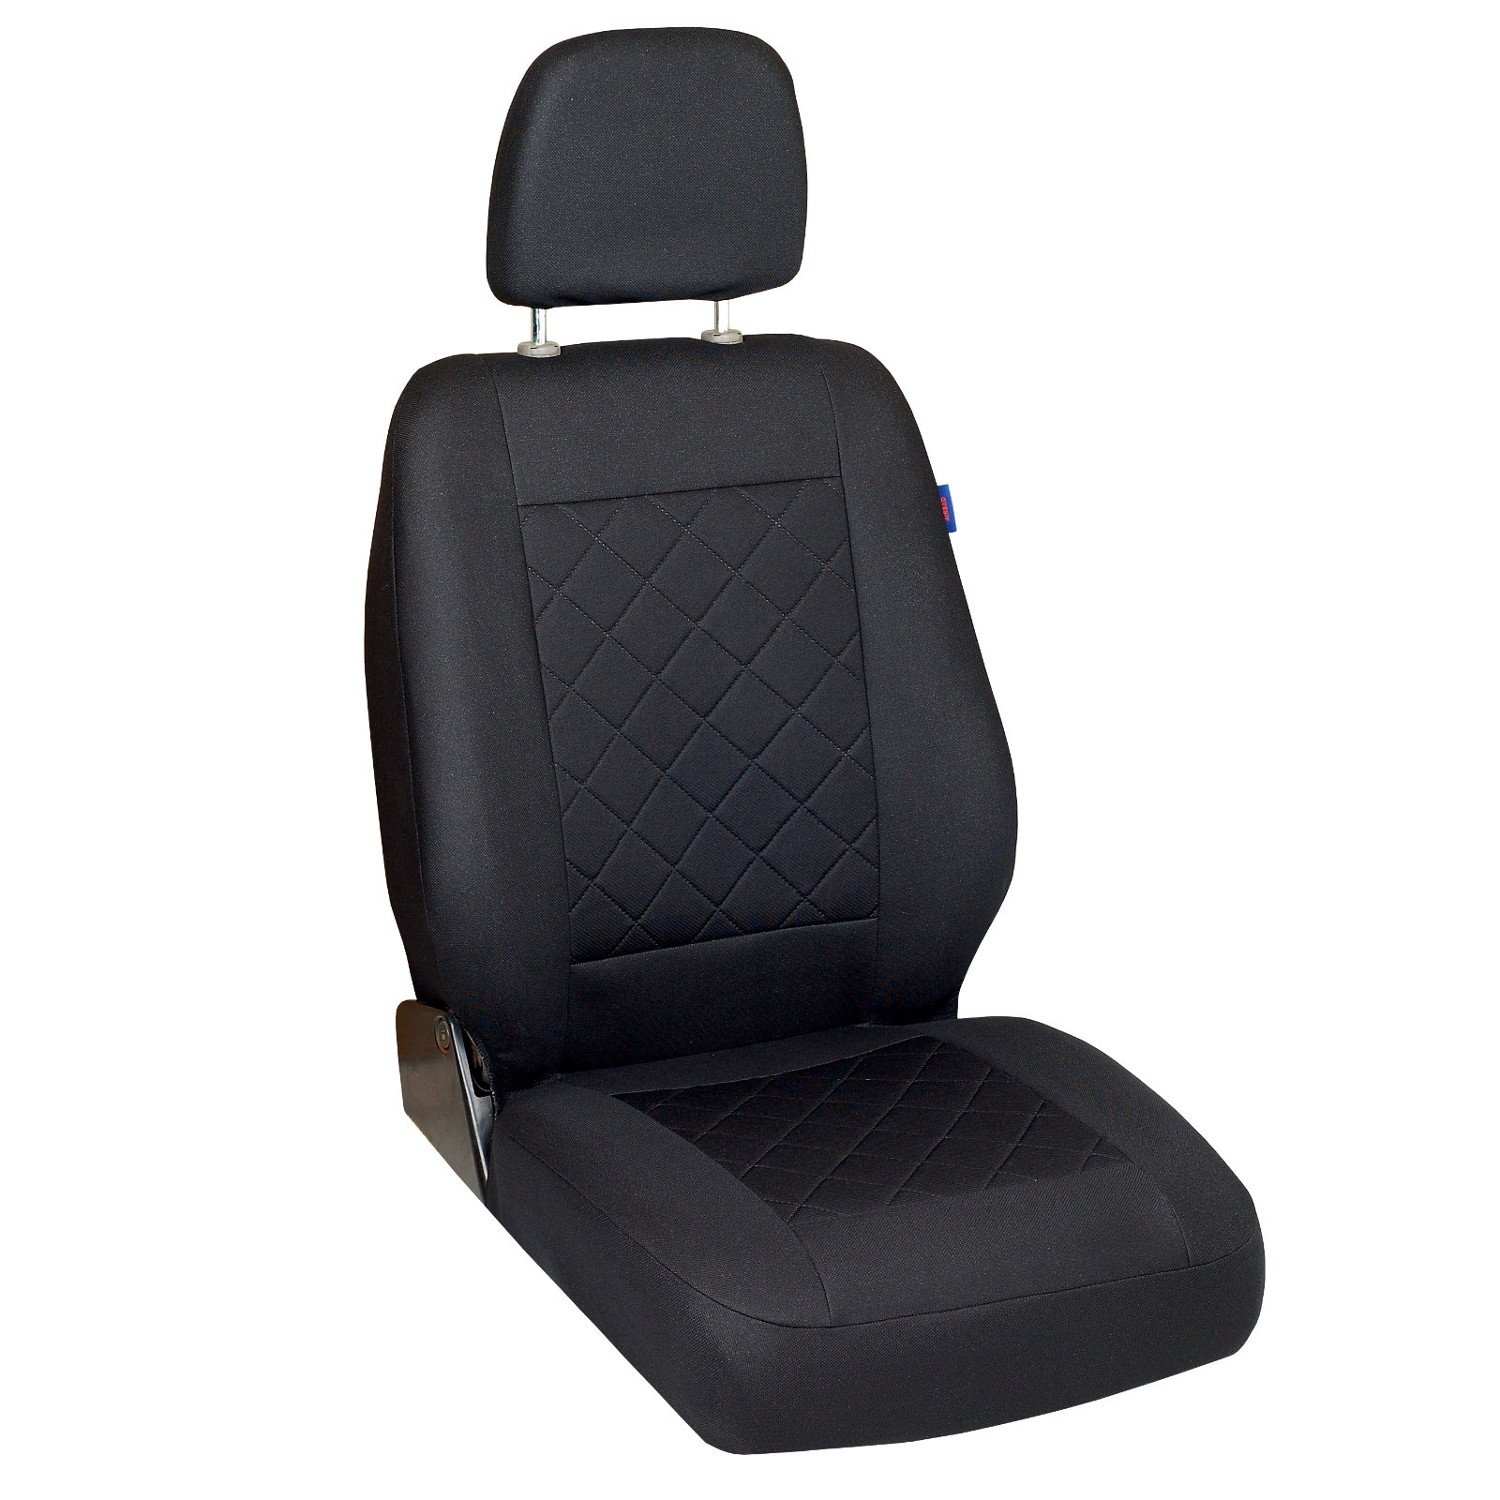 Zakschneider Sprinter Sitzbezug - Fahrersitz - Farbe Premium Schwarz gepresstes Karomuster von Zakschneider